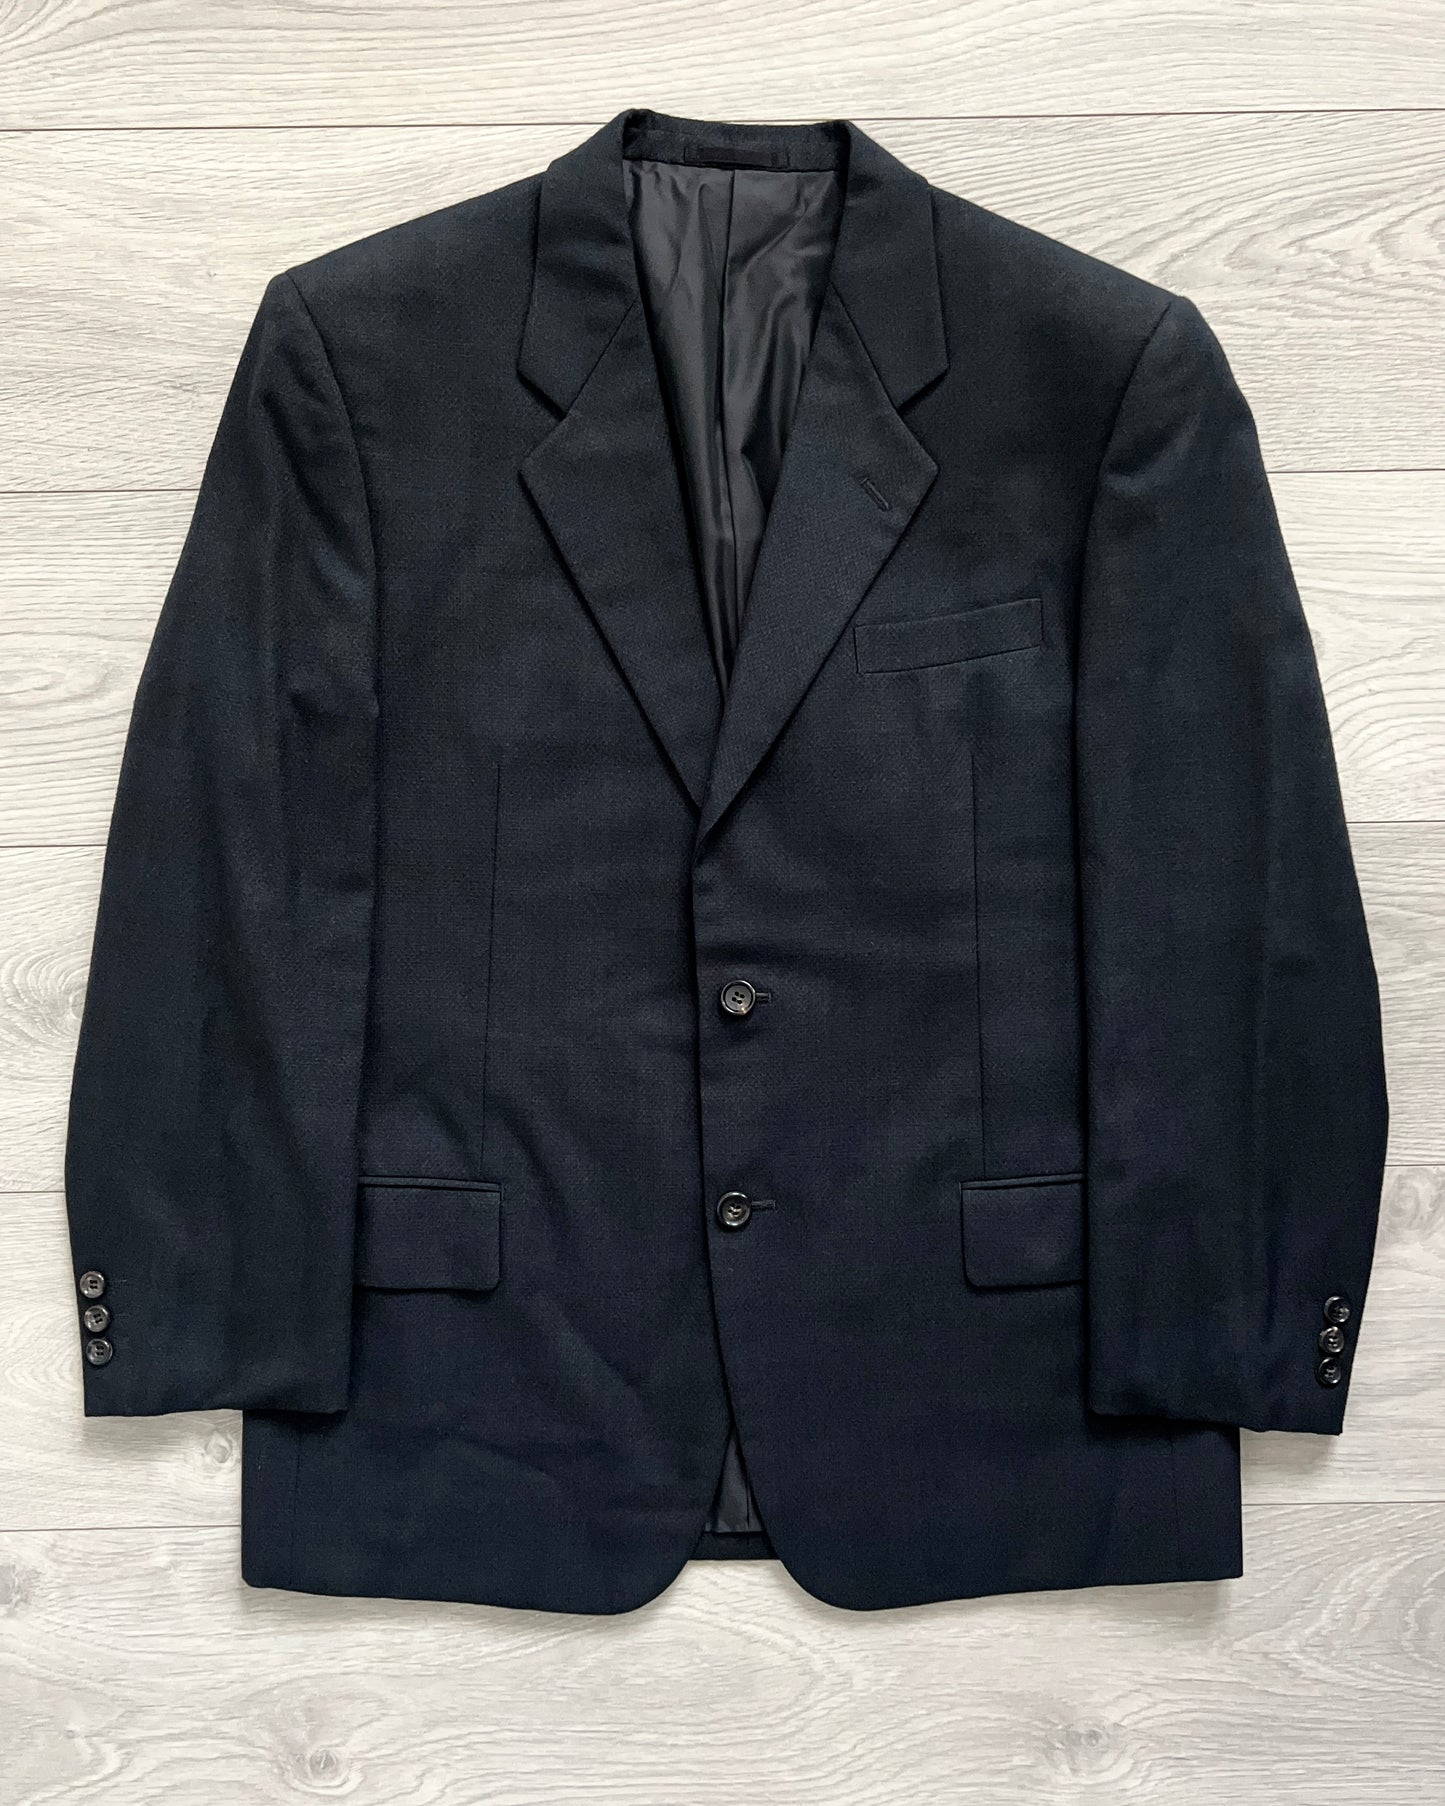 Comme Des Garcons Homme Deux AW1999 Textured Pleated Suit - Size L Jacket / 34 Waist